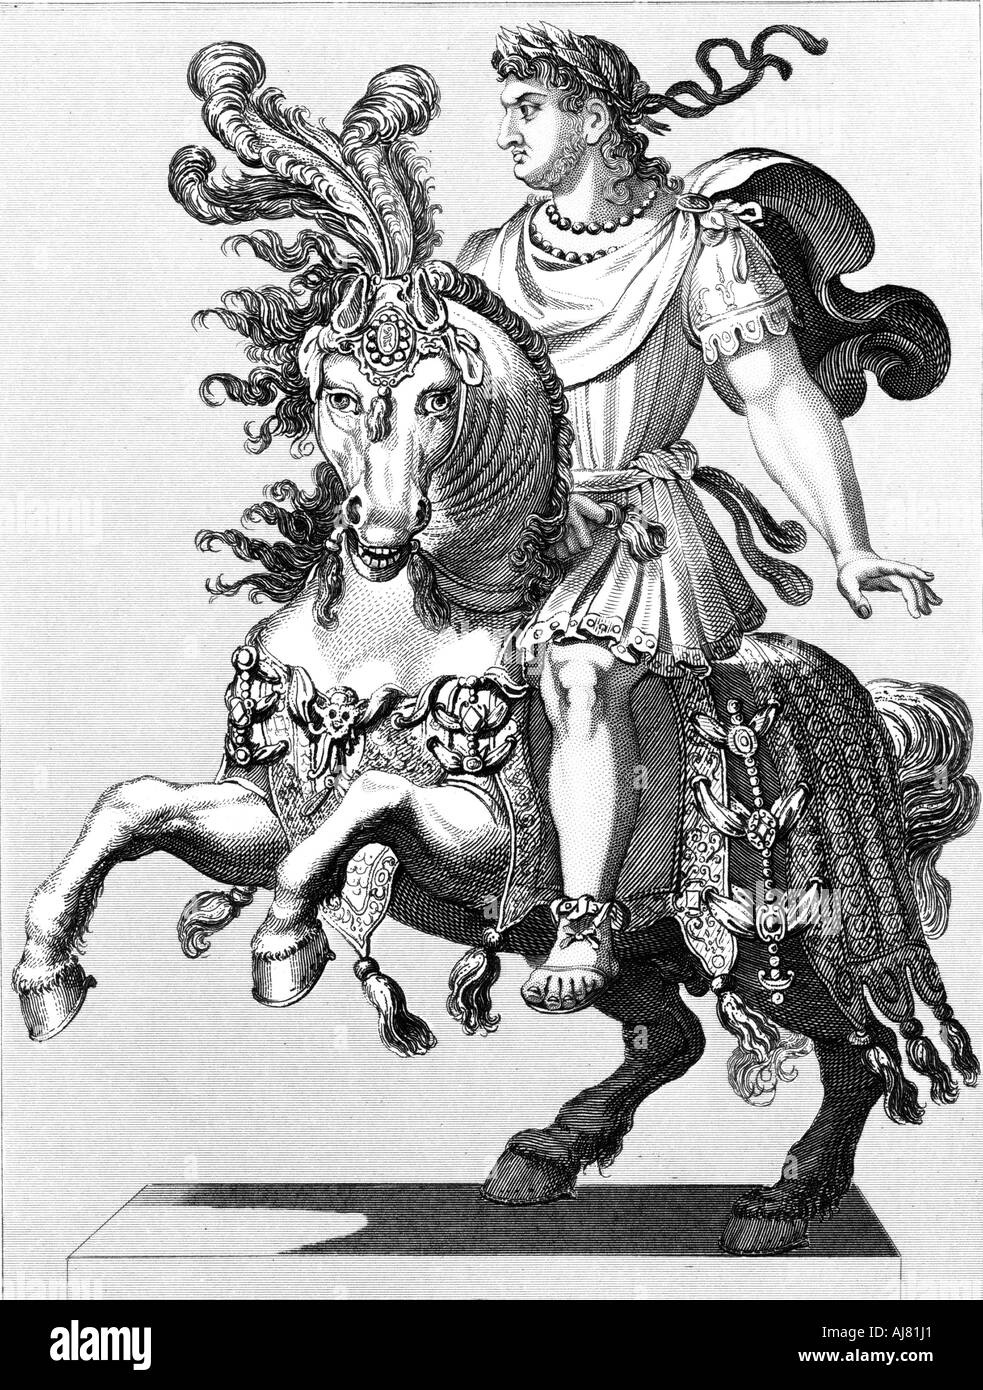 Néron, empereur romain du 1er siècle, 1850. Artiste : Inconnu Banque D'Images